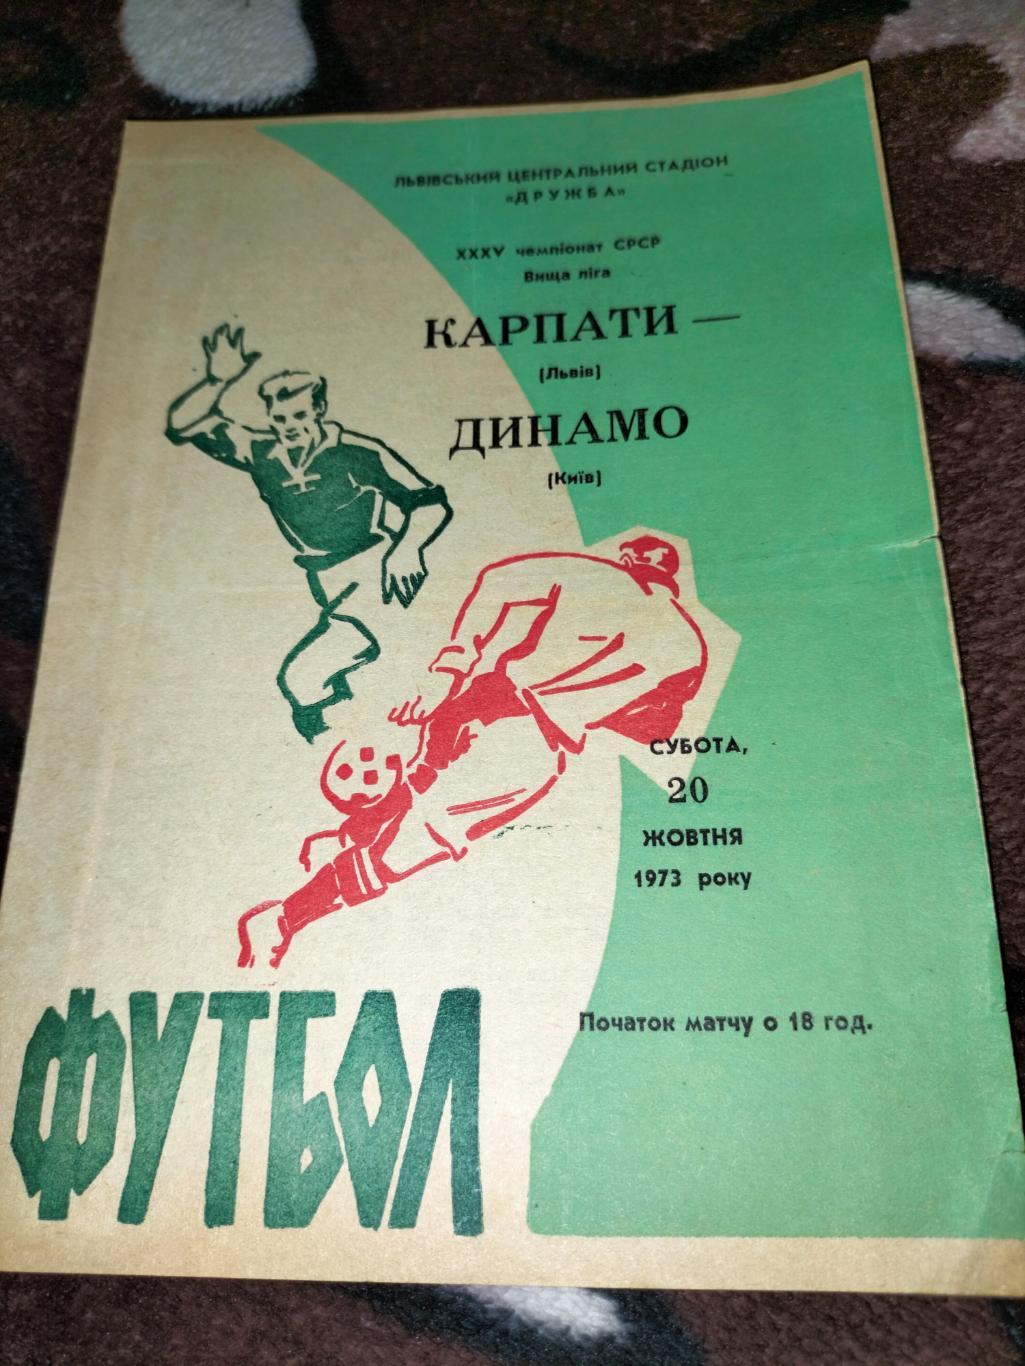 Карпати Львів -Динамо Київ 1973